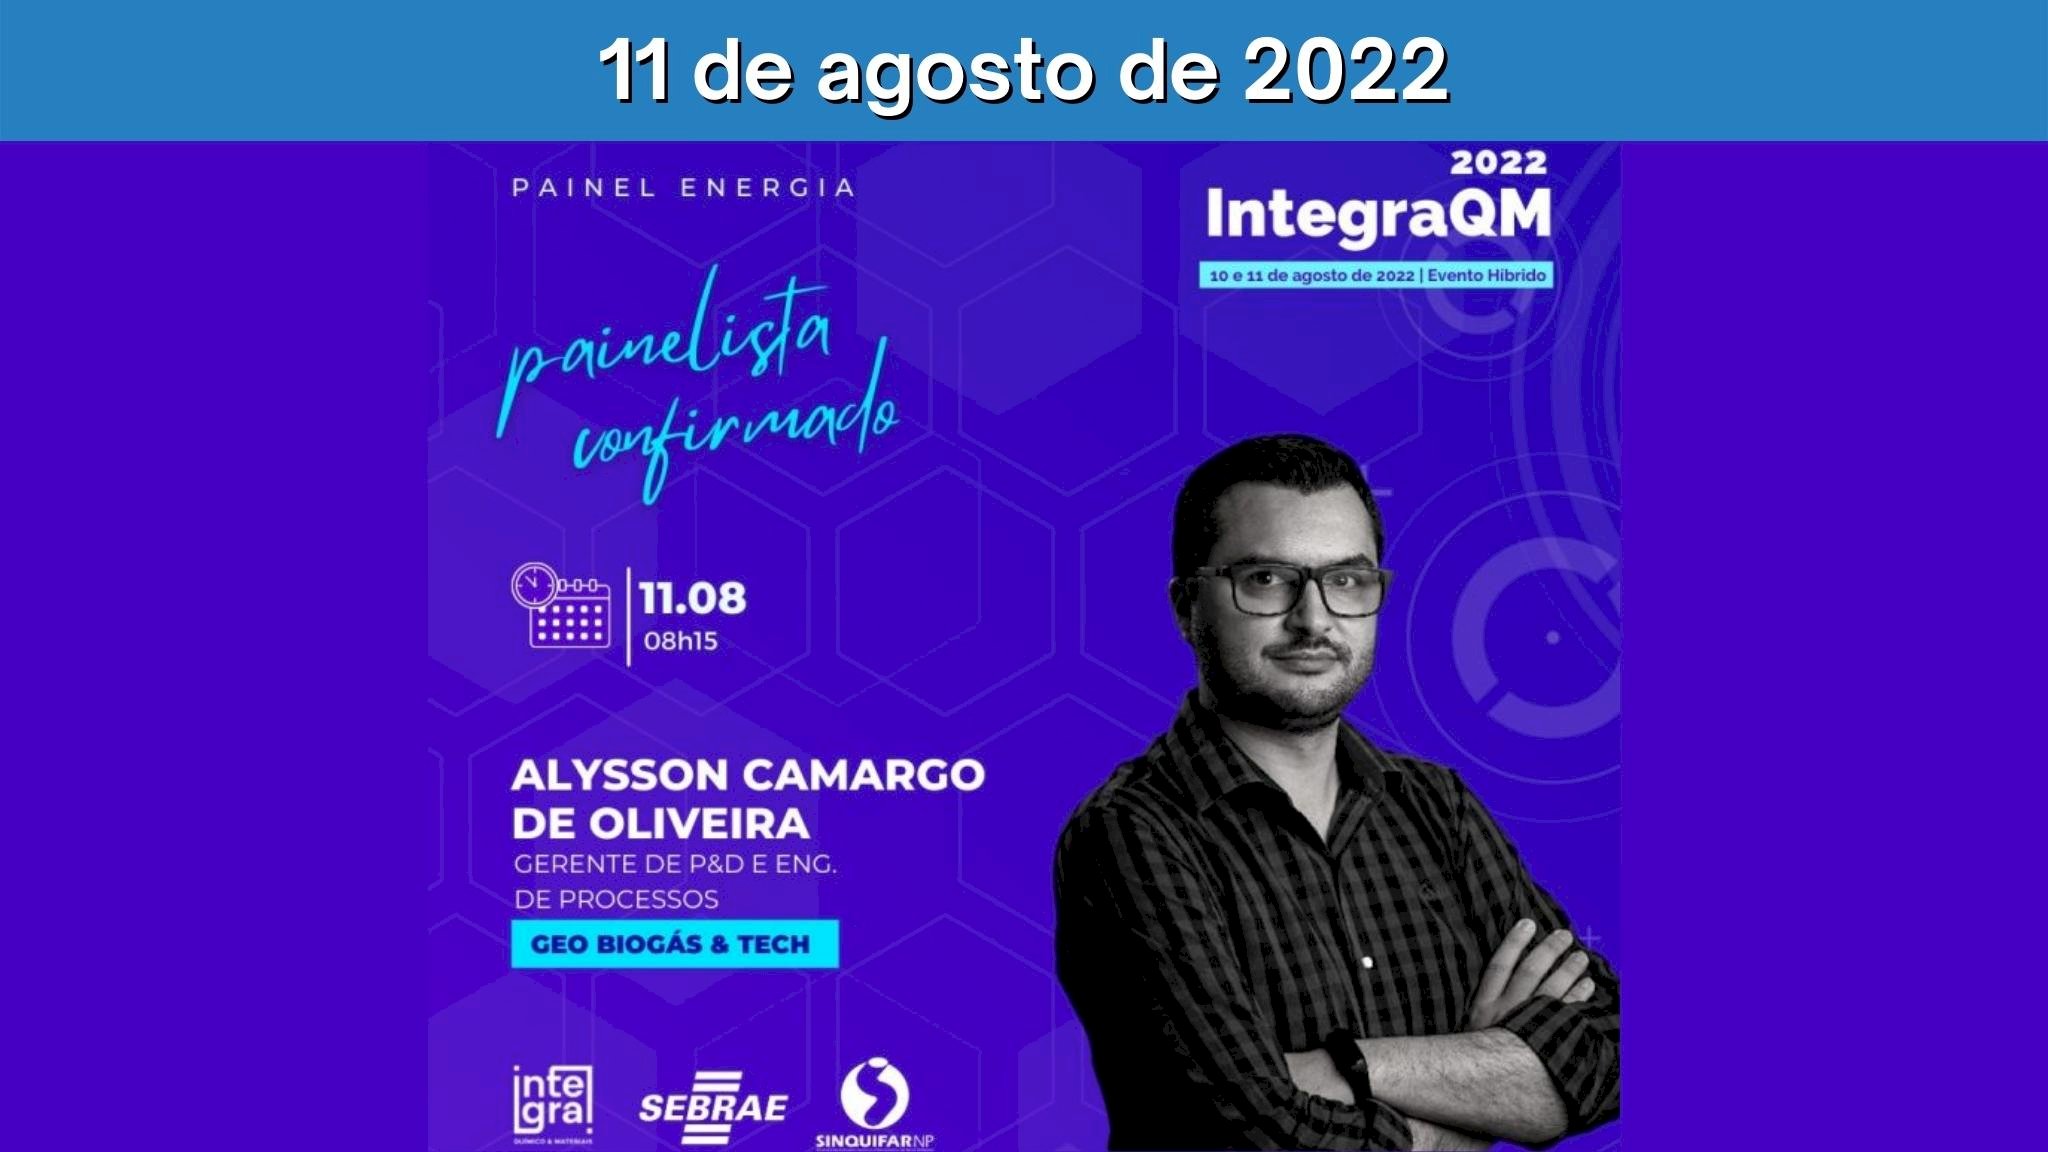 IntegraQM 2022